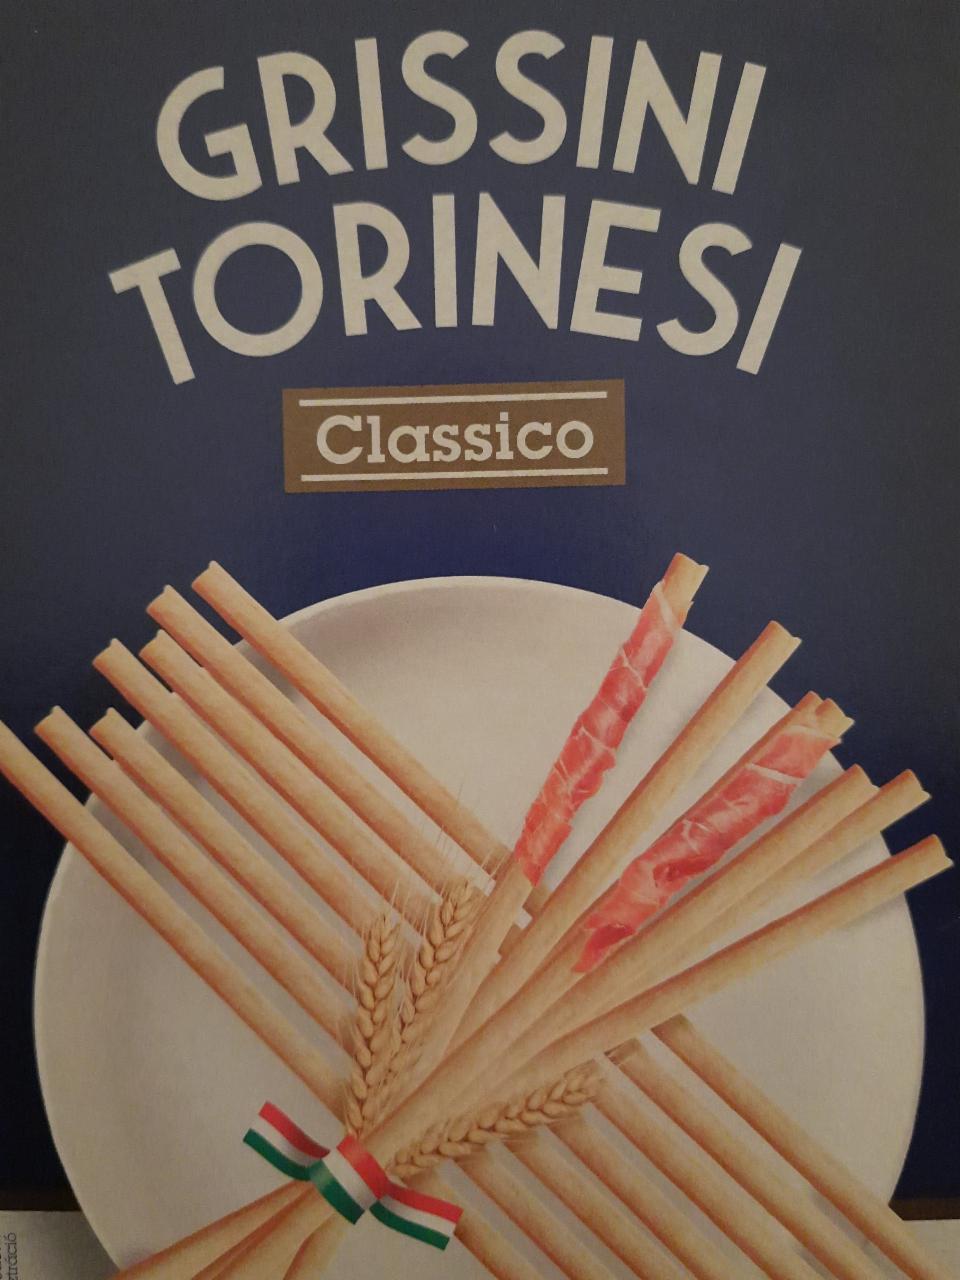 Fotografie - Grissini Torinesi Classico Cucina Nobile